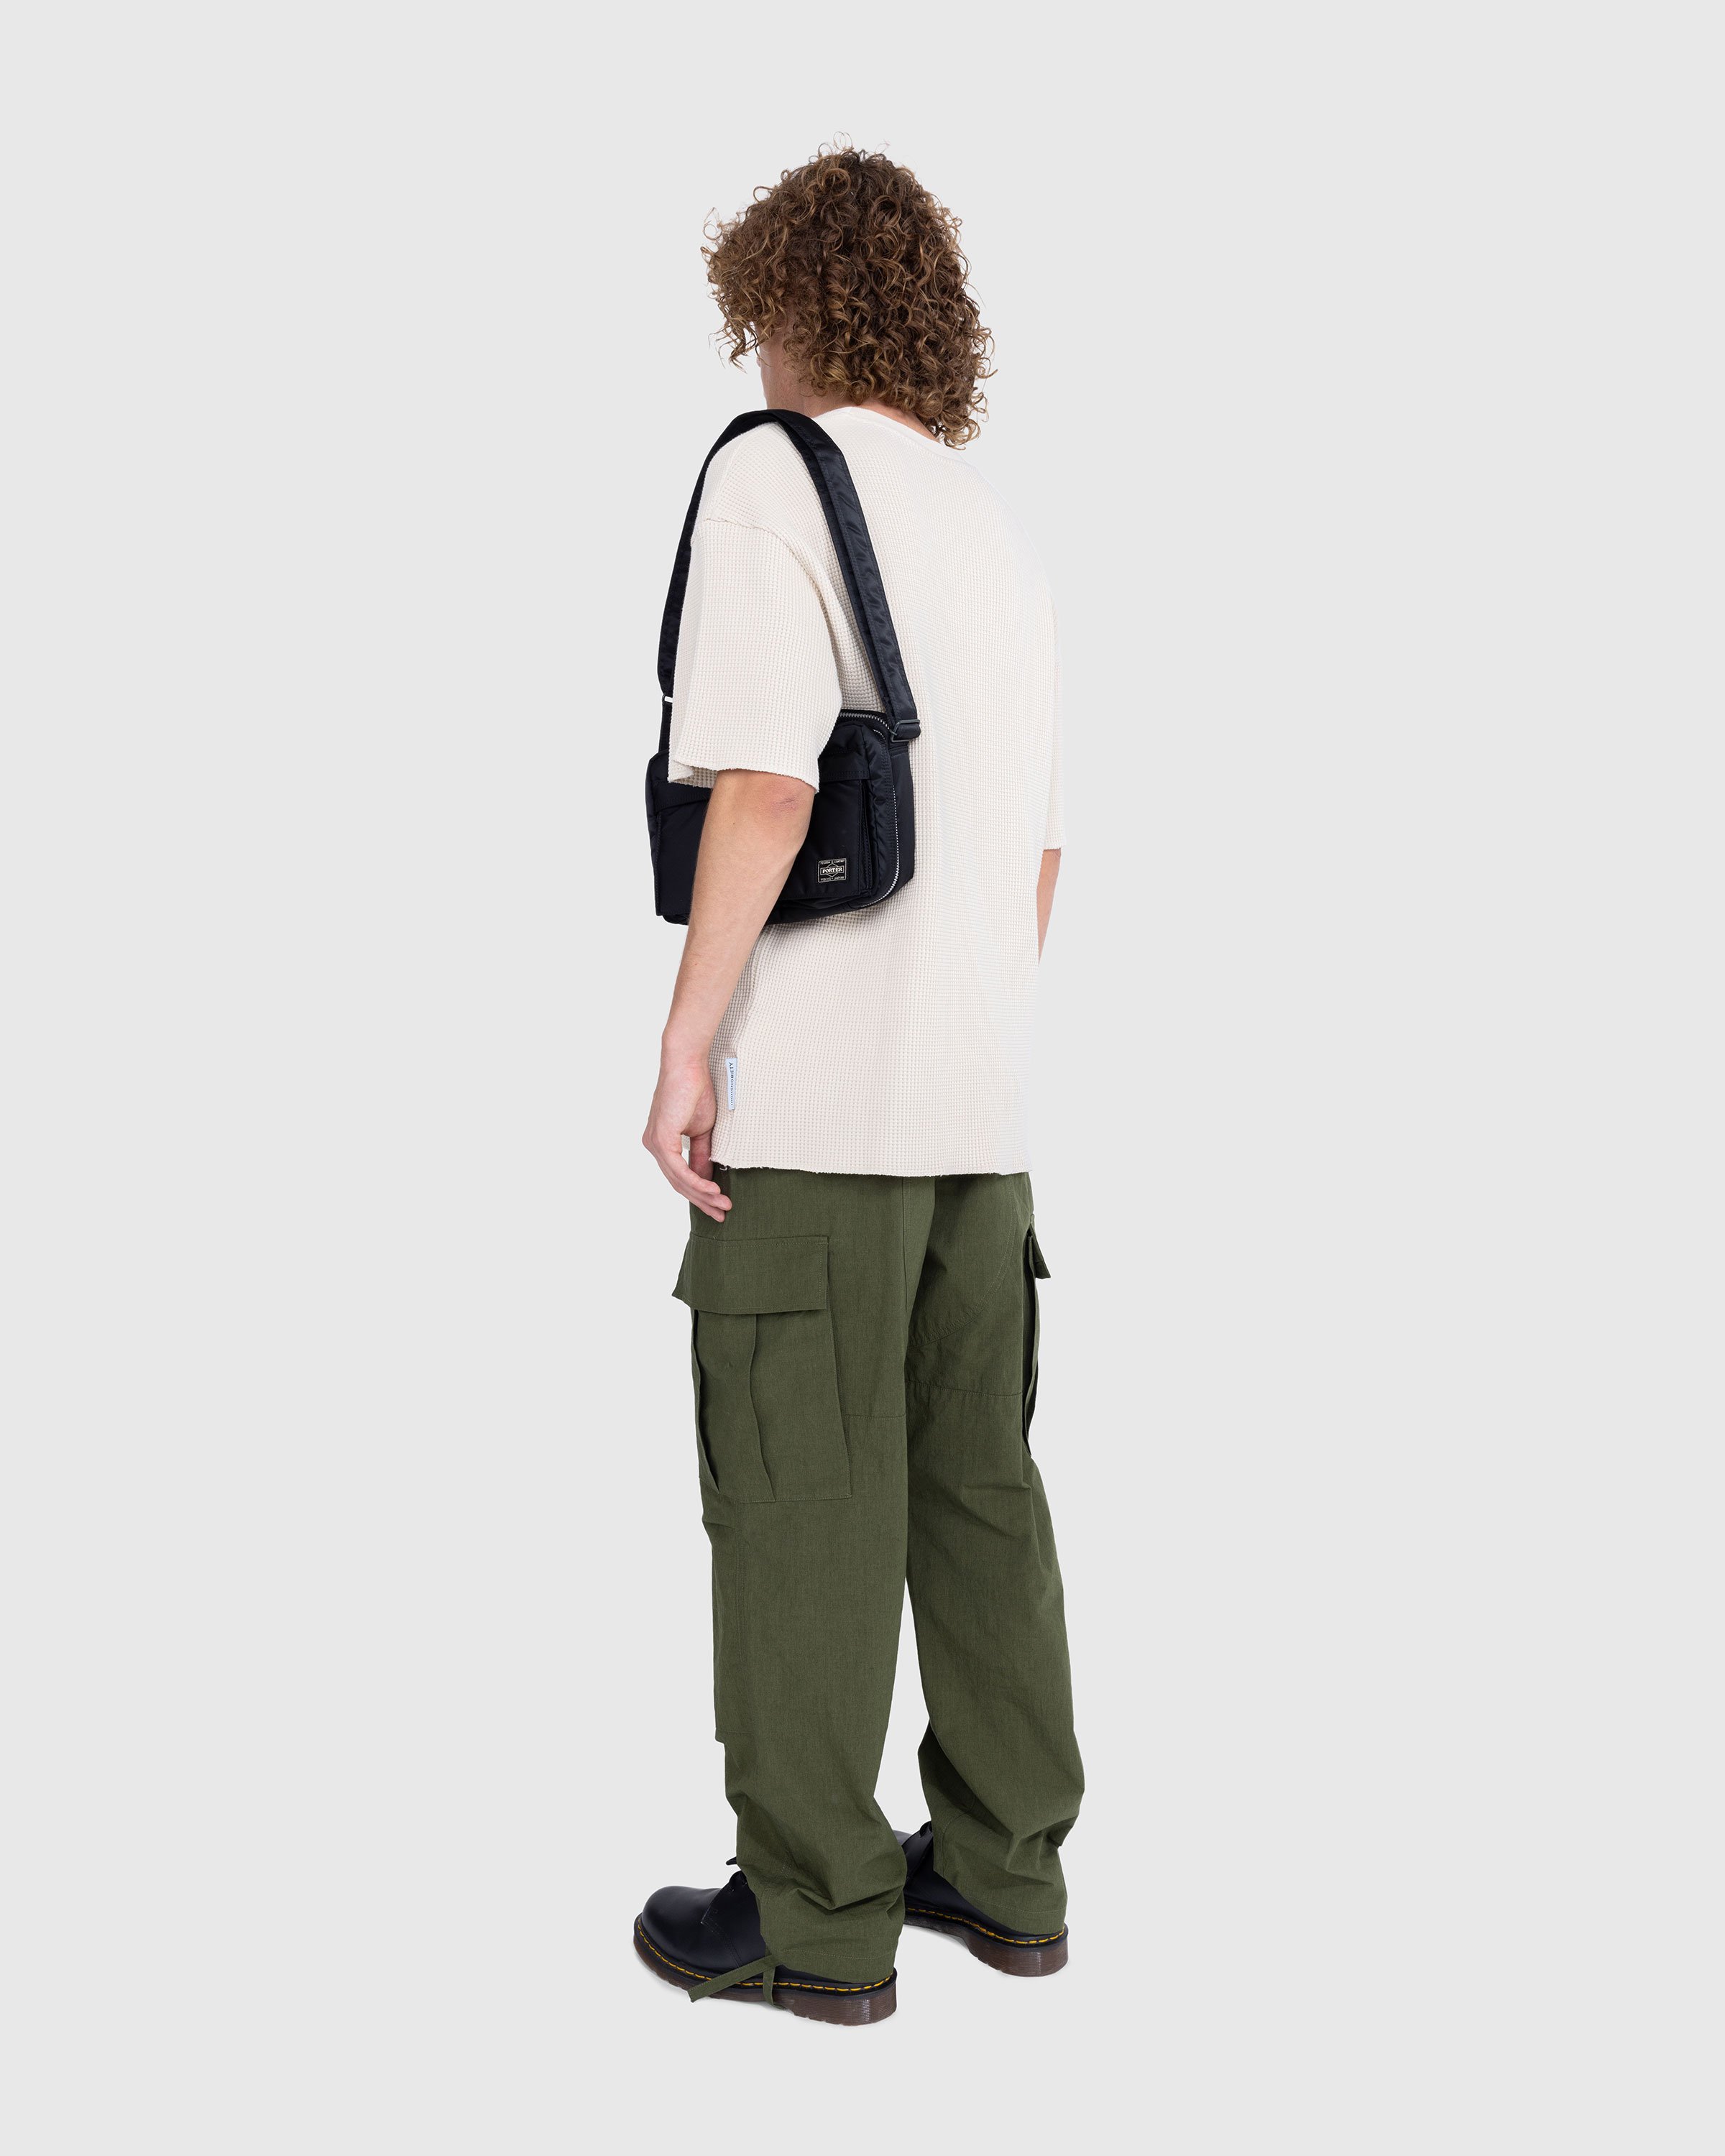 Porter-Yoshida & Co. - Tanker Shoulder Bag Black - Accessories - Black - Image 4